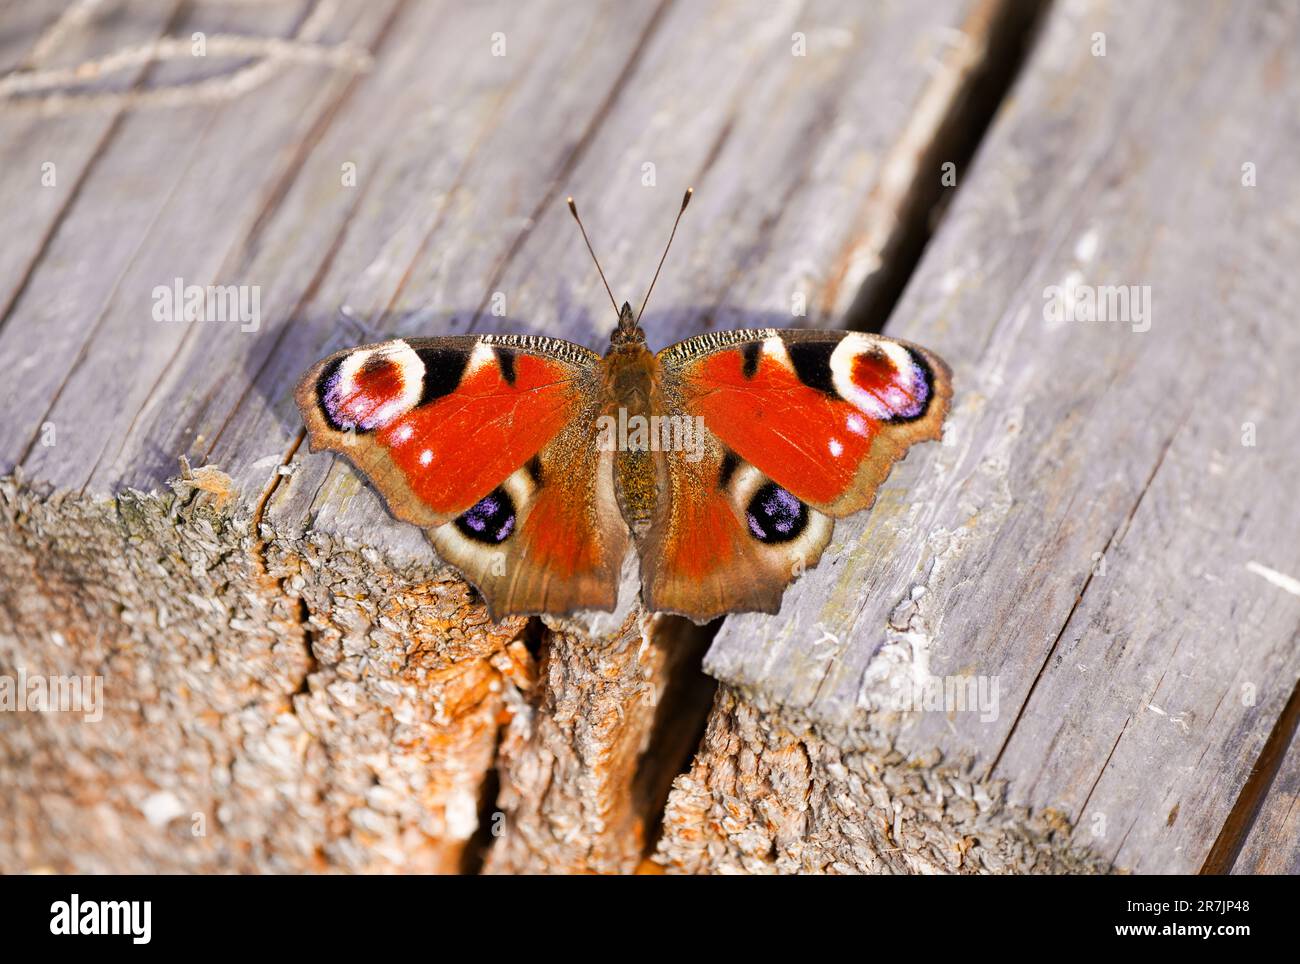 Papillon paon avec des ailes largement ouvertes sur une surface en bois. Gros plan insecte. Papillon rouge. Aglais io. Paon européen. Banque D'Images